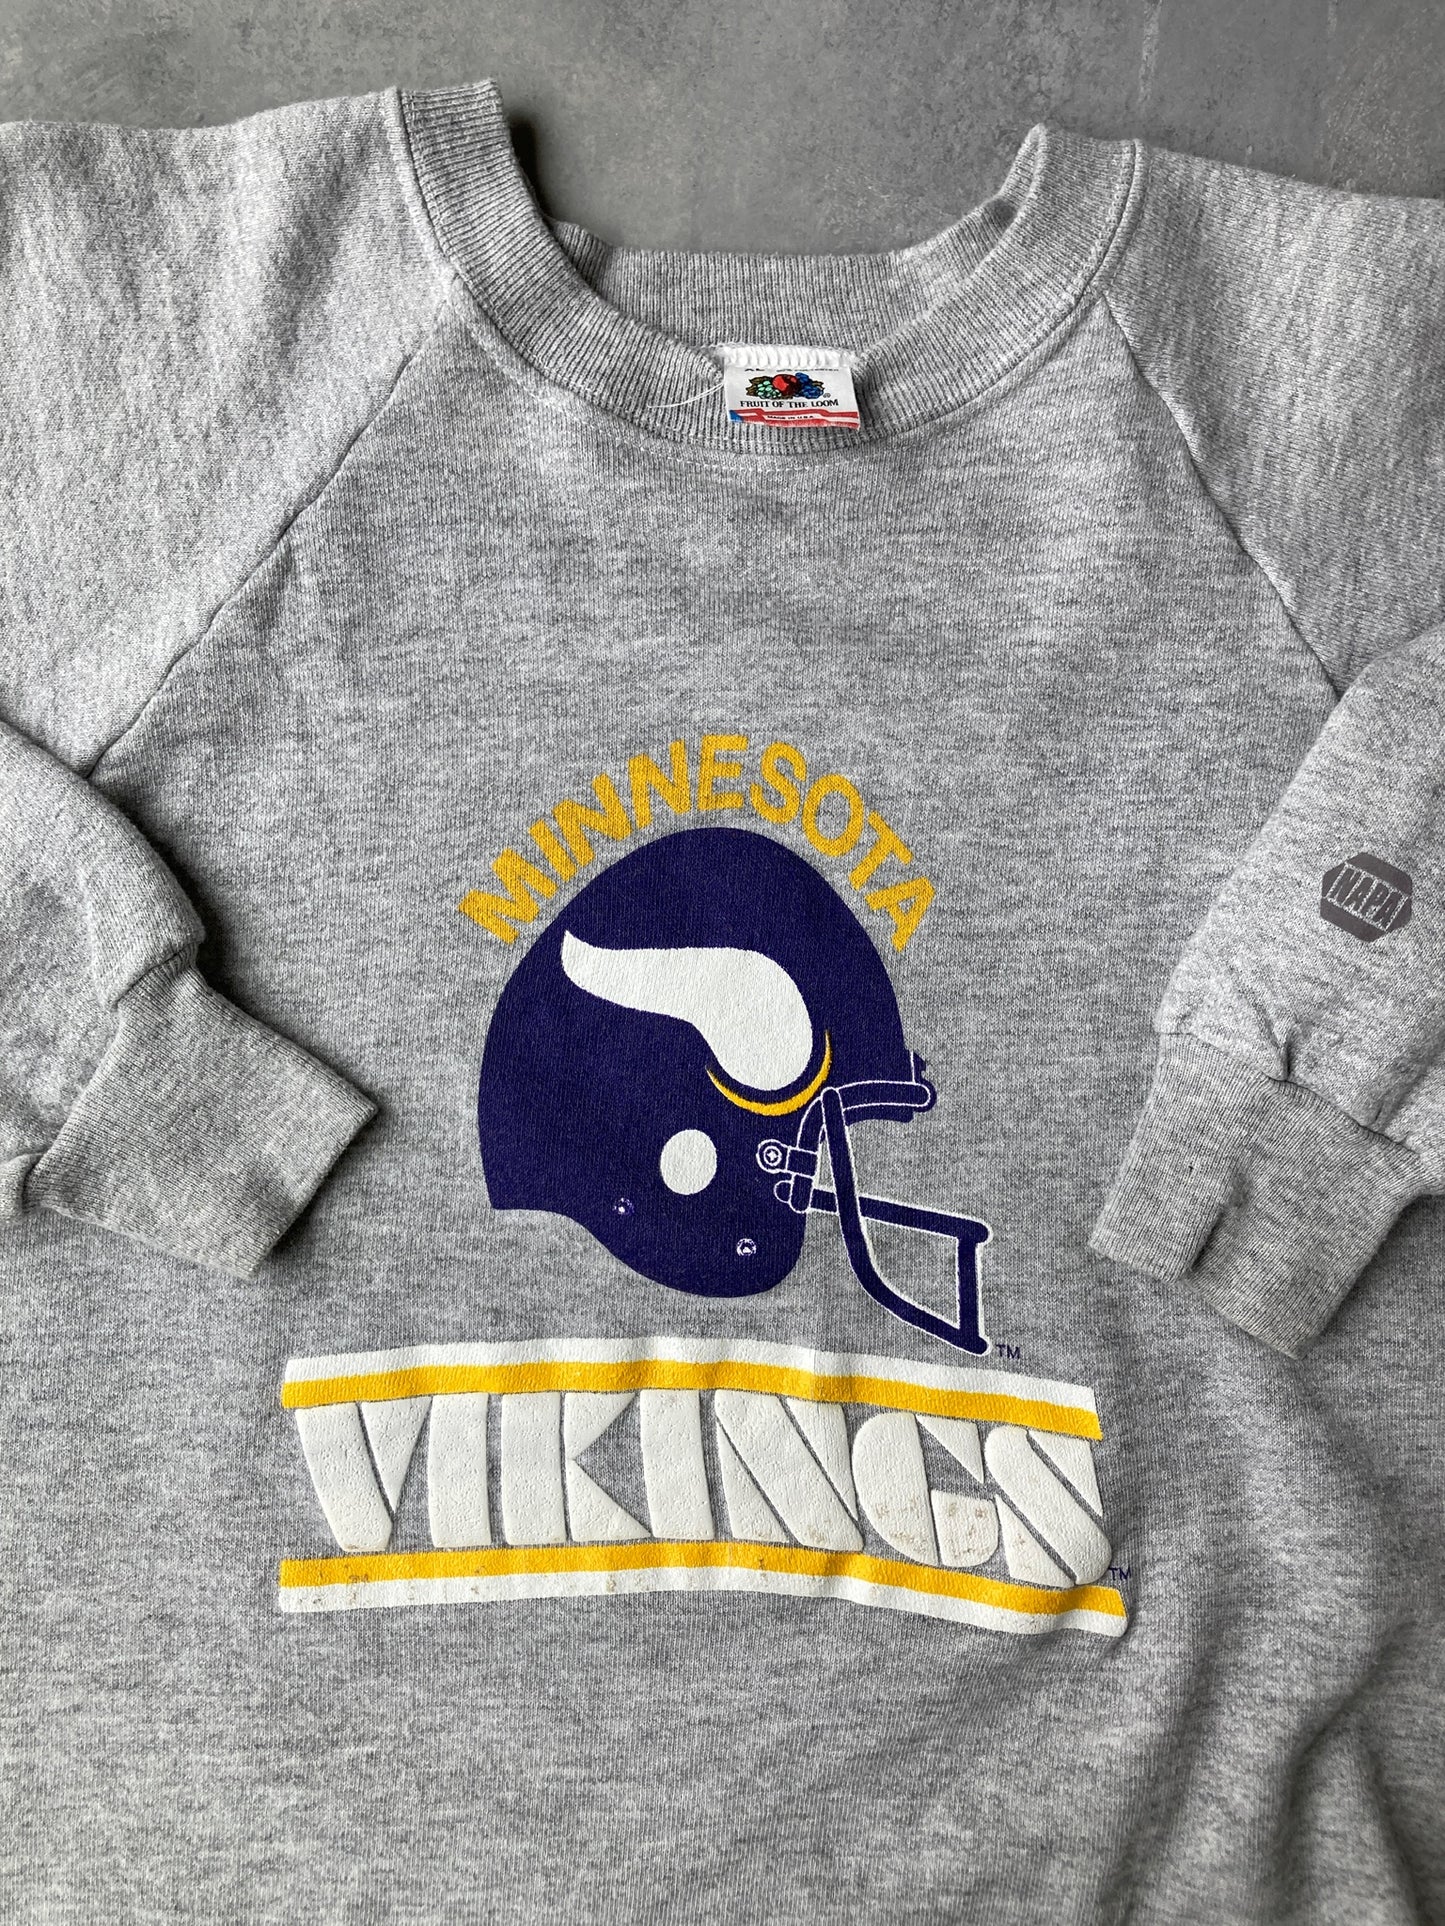 Minnesota Vikings Sweatshirt 80's -  Large